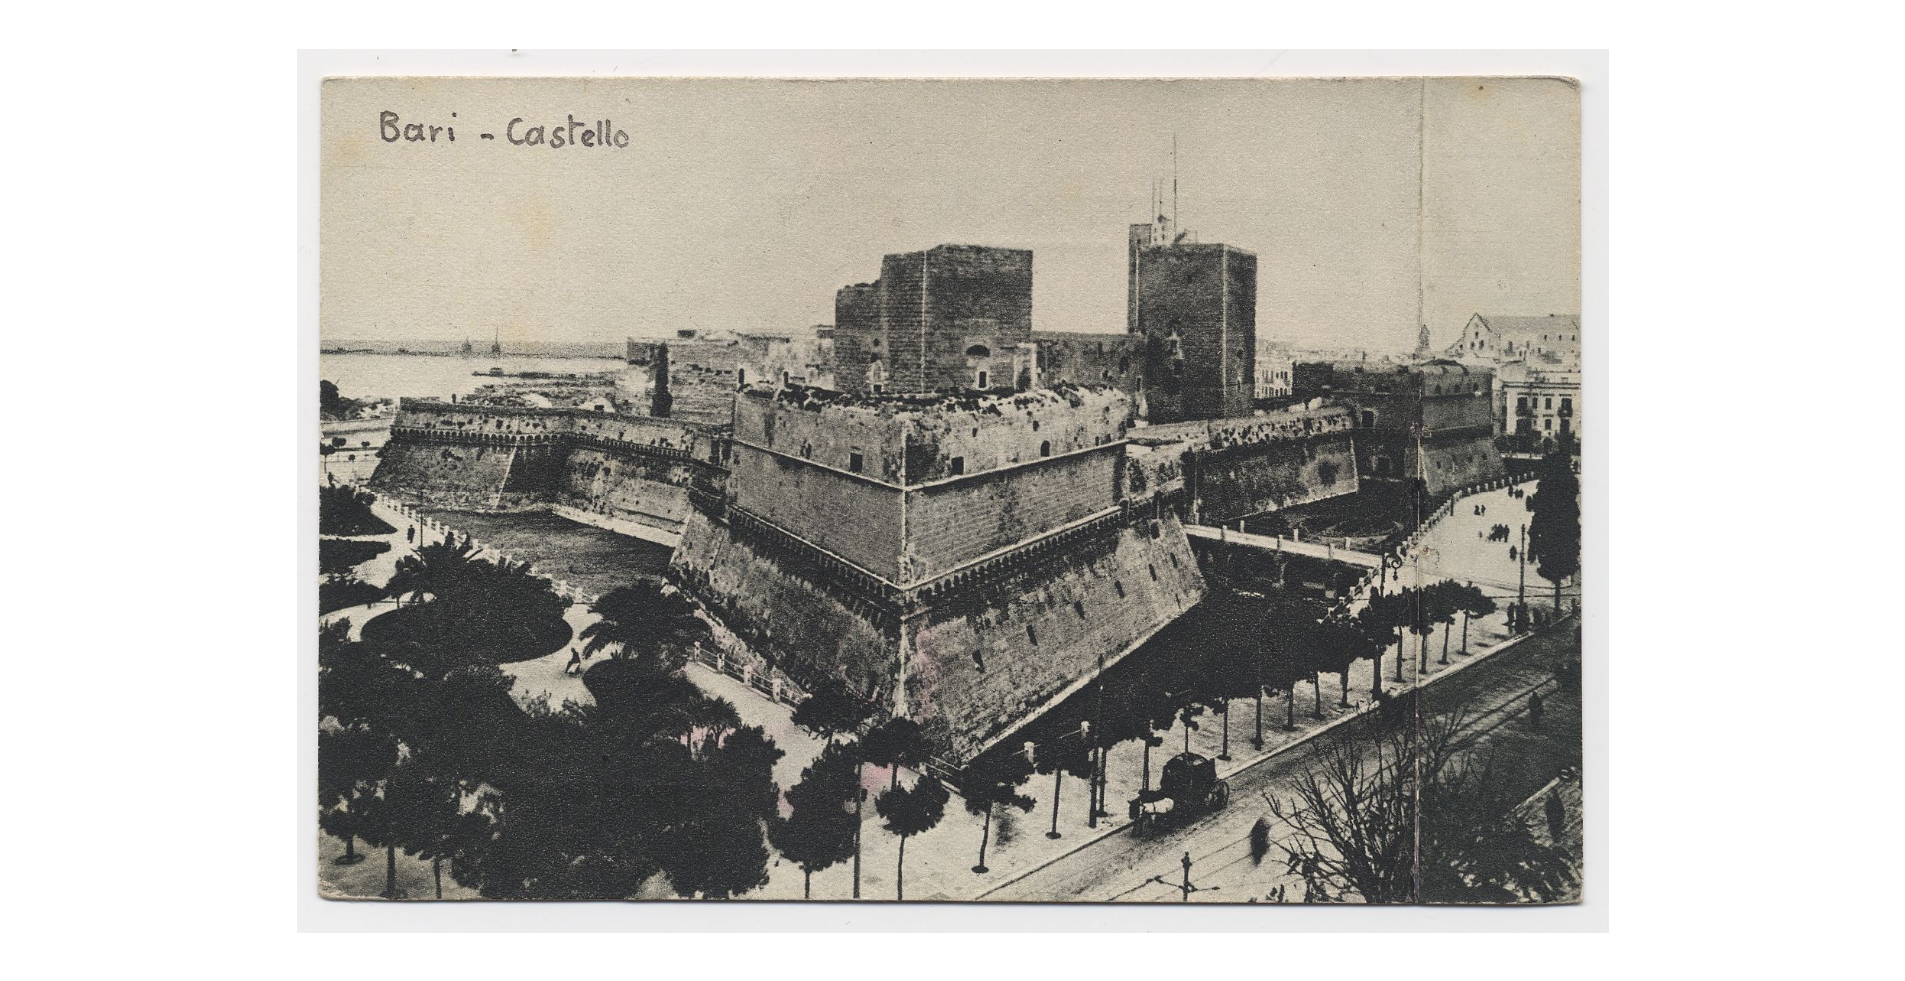 Fotografo non identificato, Bari - Castello, 1951-2000, cartolina, FFC018248